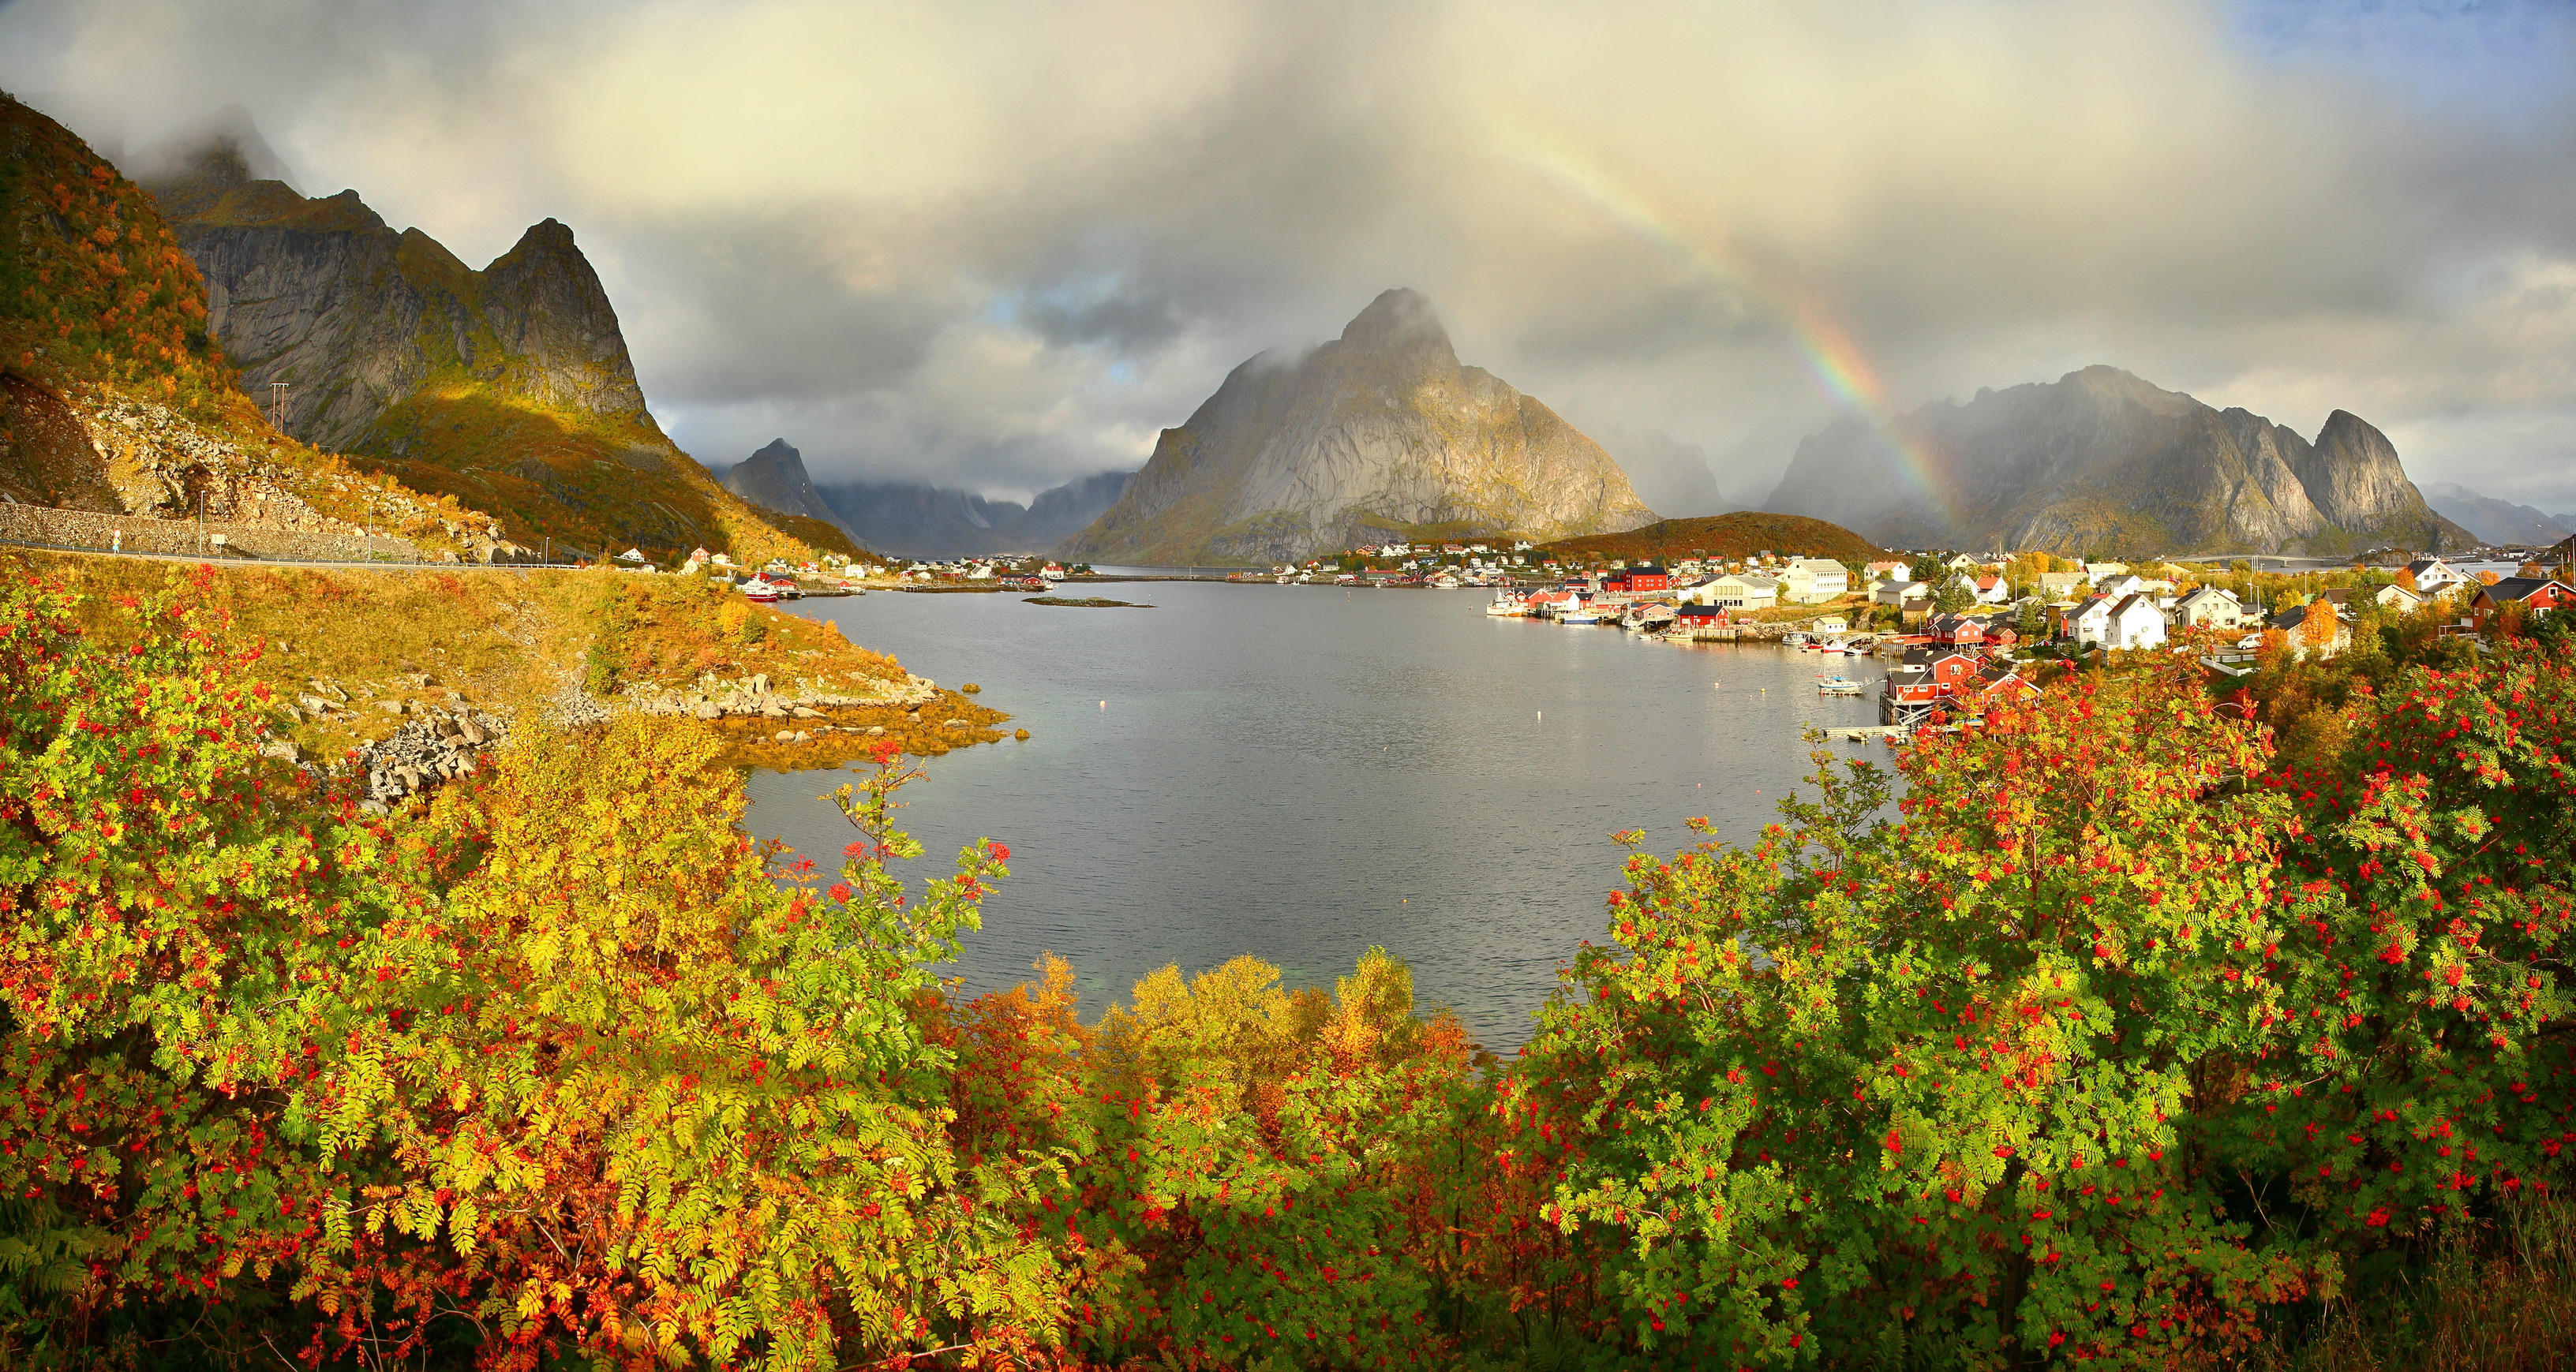 Download mobile wallpaper Landscape, Rainbow, Mountain, Lake, Village, Norway, Lofoten, Man Made, Reine for free.